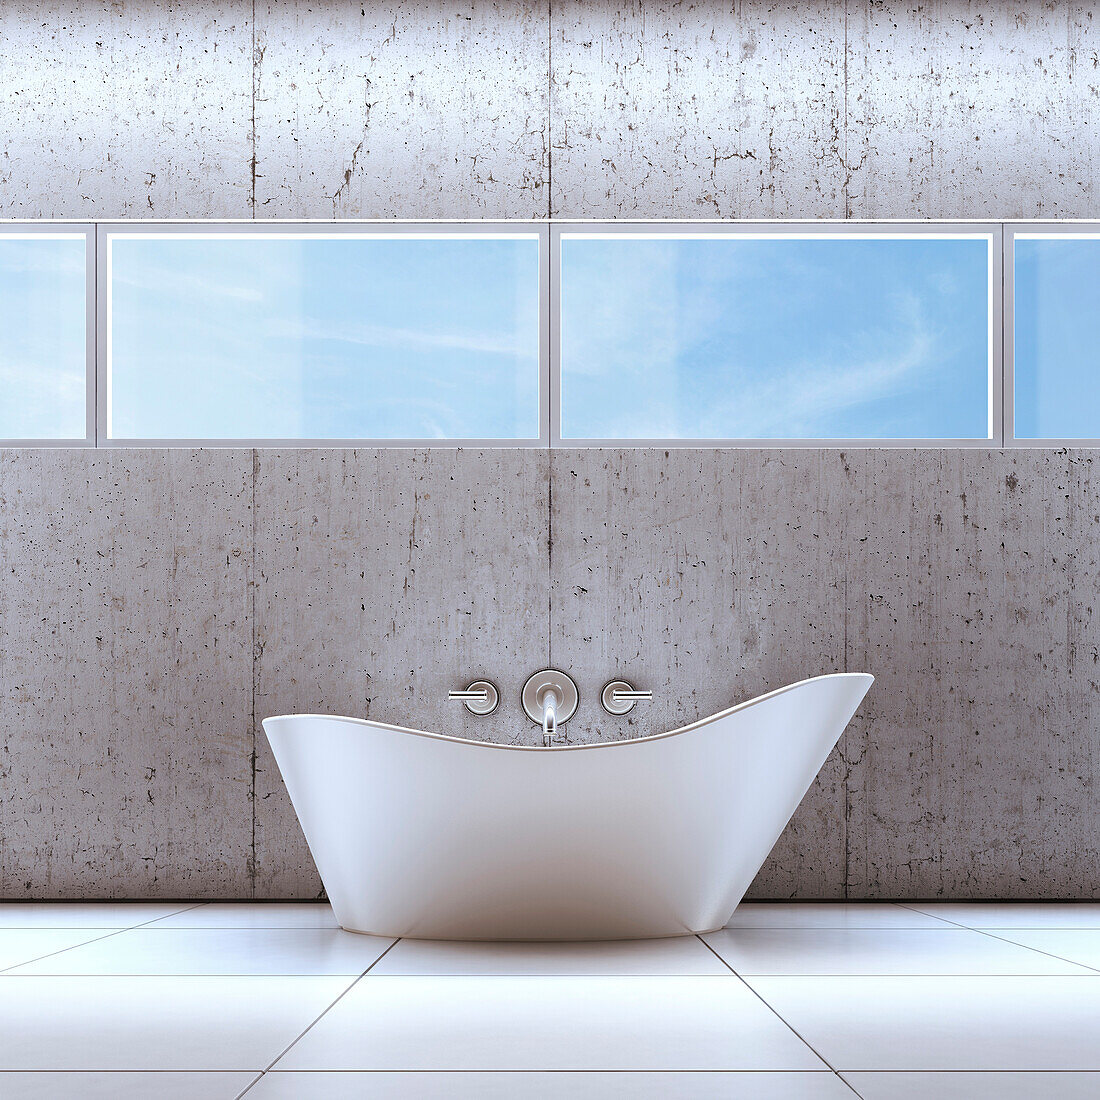 3D-Illustration einer Badewanne